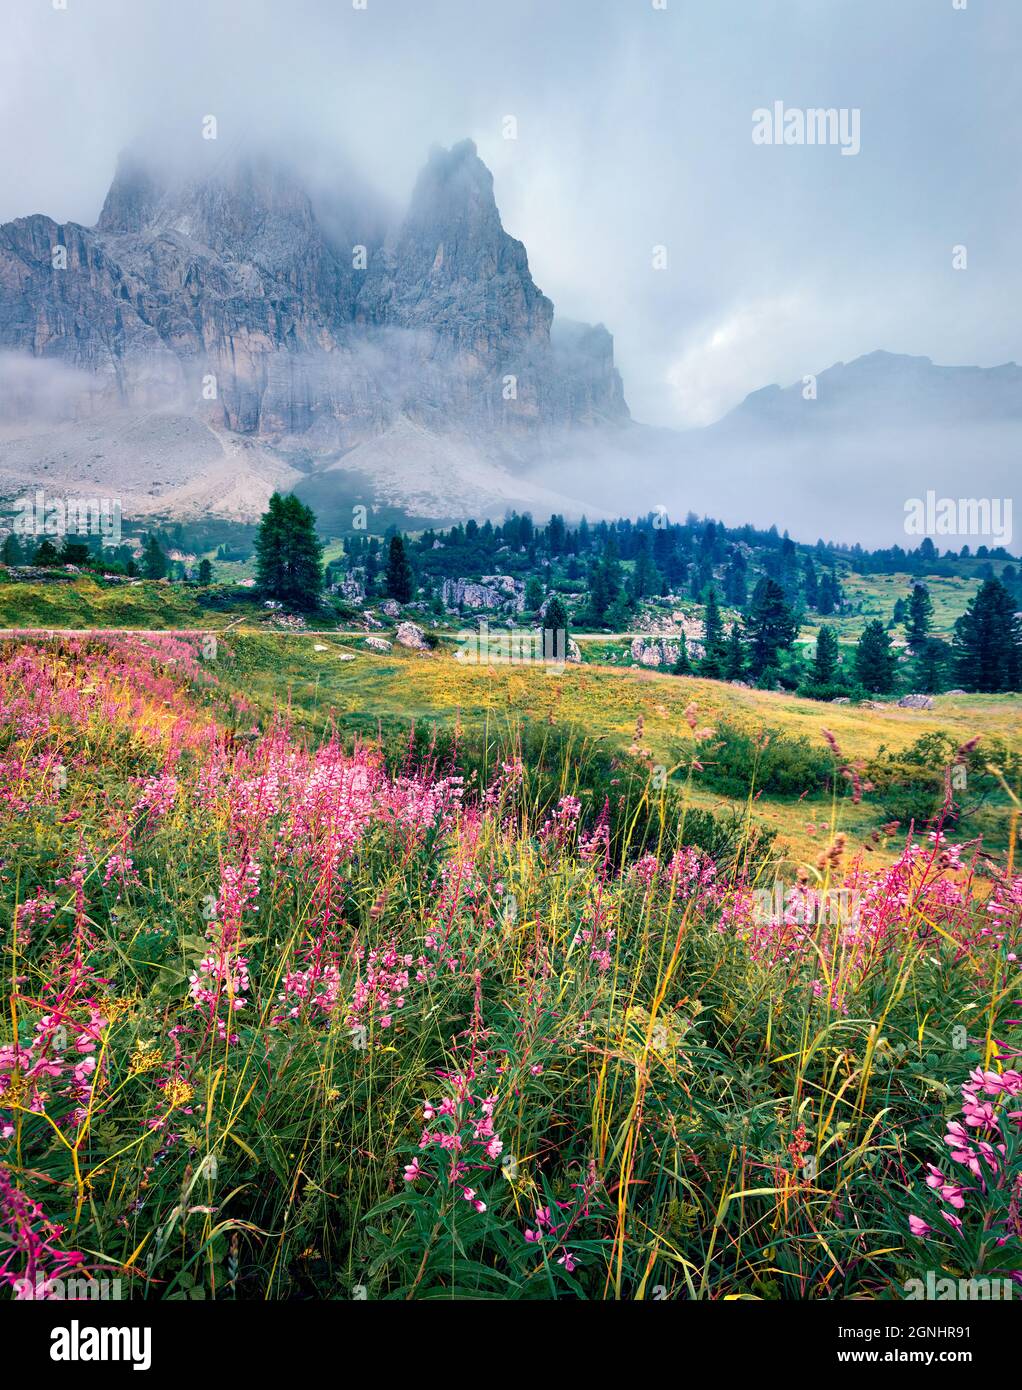 Vue du matin sur le pic de la Pista Lagazuoi depuis le col de Falzarego. Pittoresque scène estivale des Alpes Dolomiti, Cortina d'Ampezzo, Italie, Europe. B Banque D'Images